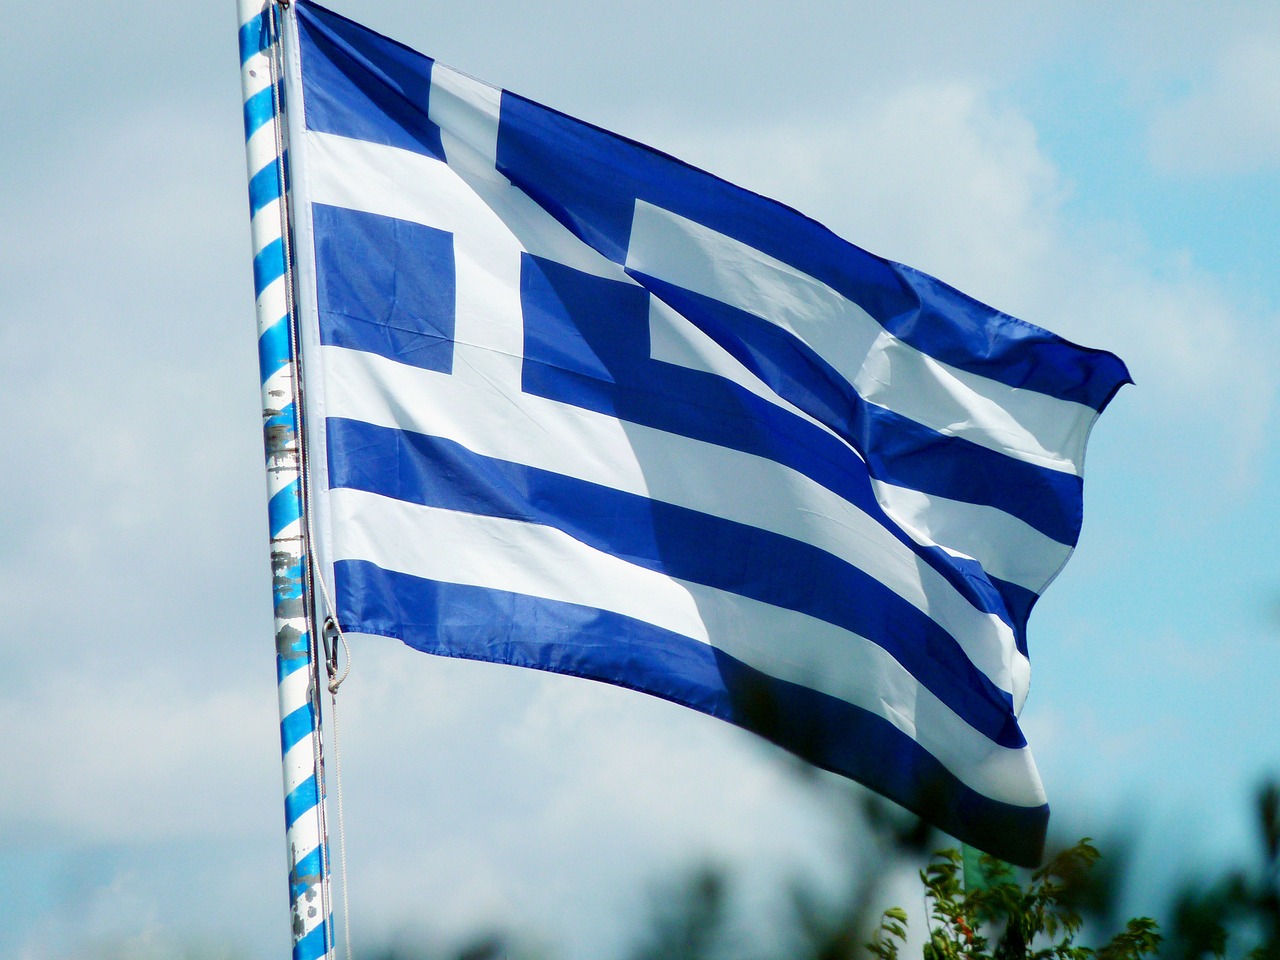 Vėliava, Graikija, Graikų Kalba, Europa, Mėlynas, Graikai, Greksitas, Pinigų Sąjunga, Skolos, Europos Centrinis Bankas